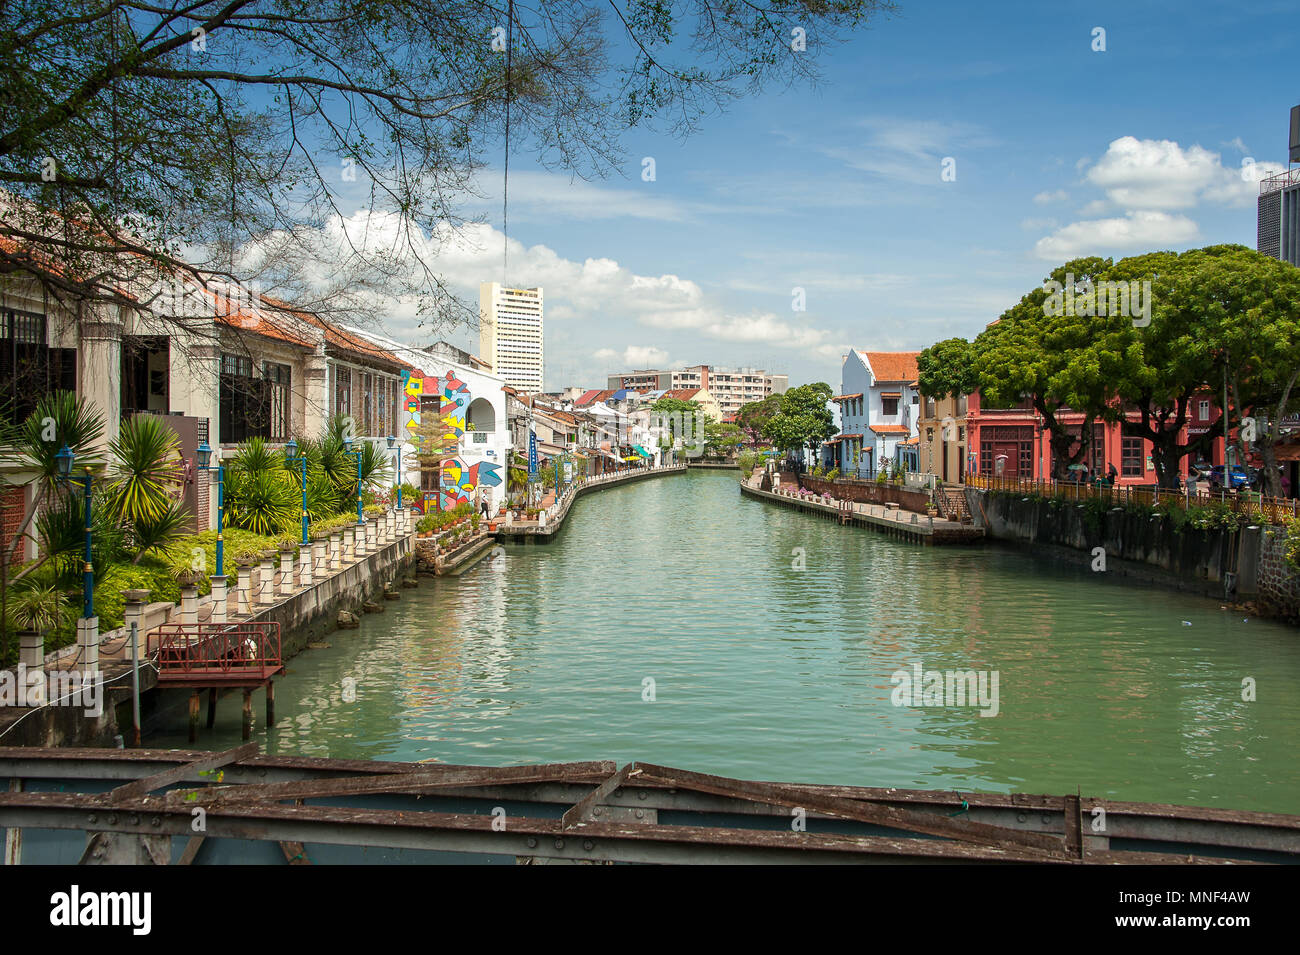 Scène pittoresque riverside vu de Tan Kim Seng bridge, Malacca. Vue urbaine avec mélange coloré de bâtiments anciens et nouveaux avec blue cloudy sky Banque D'Images